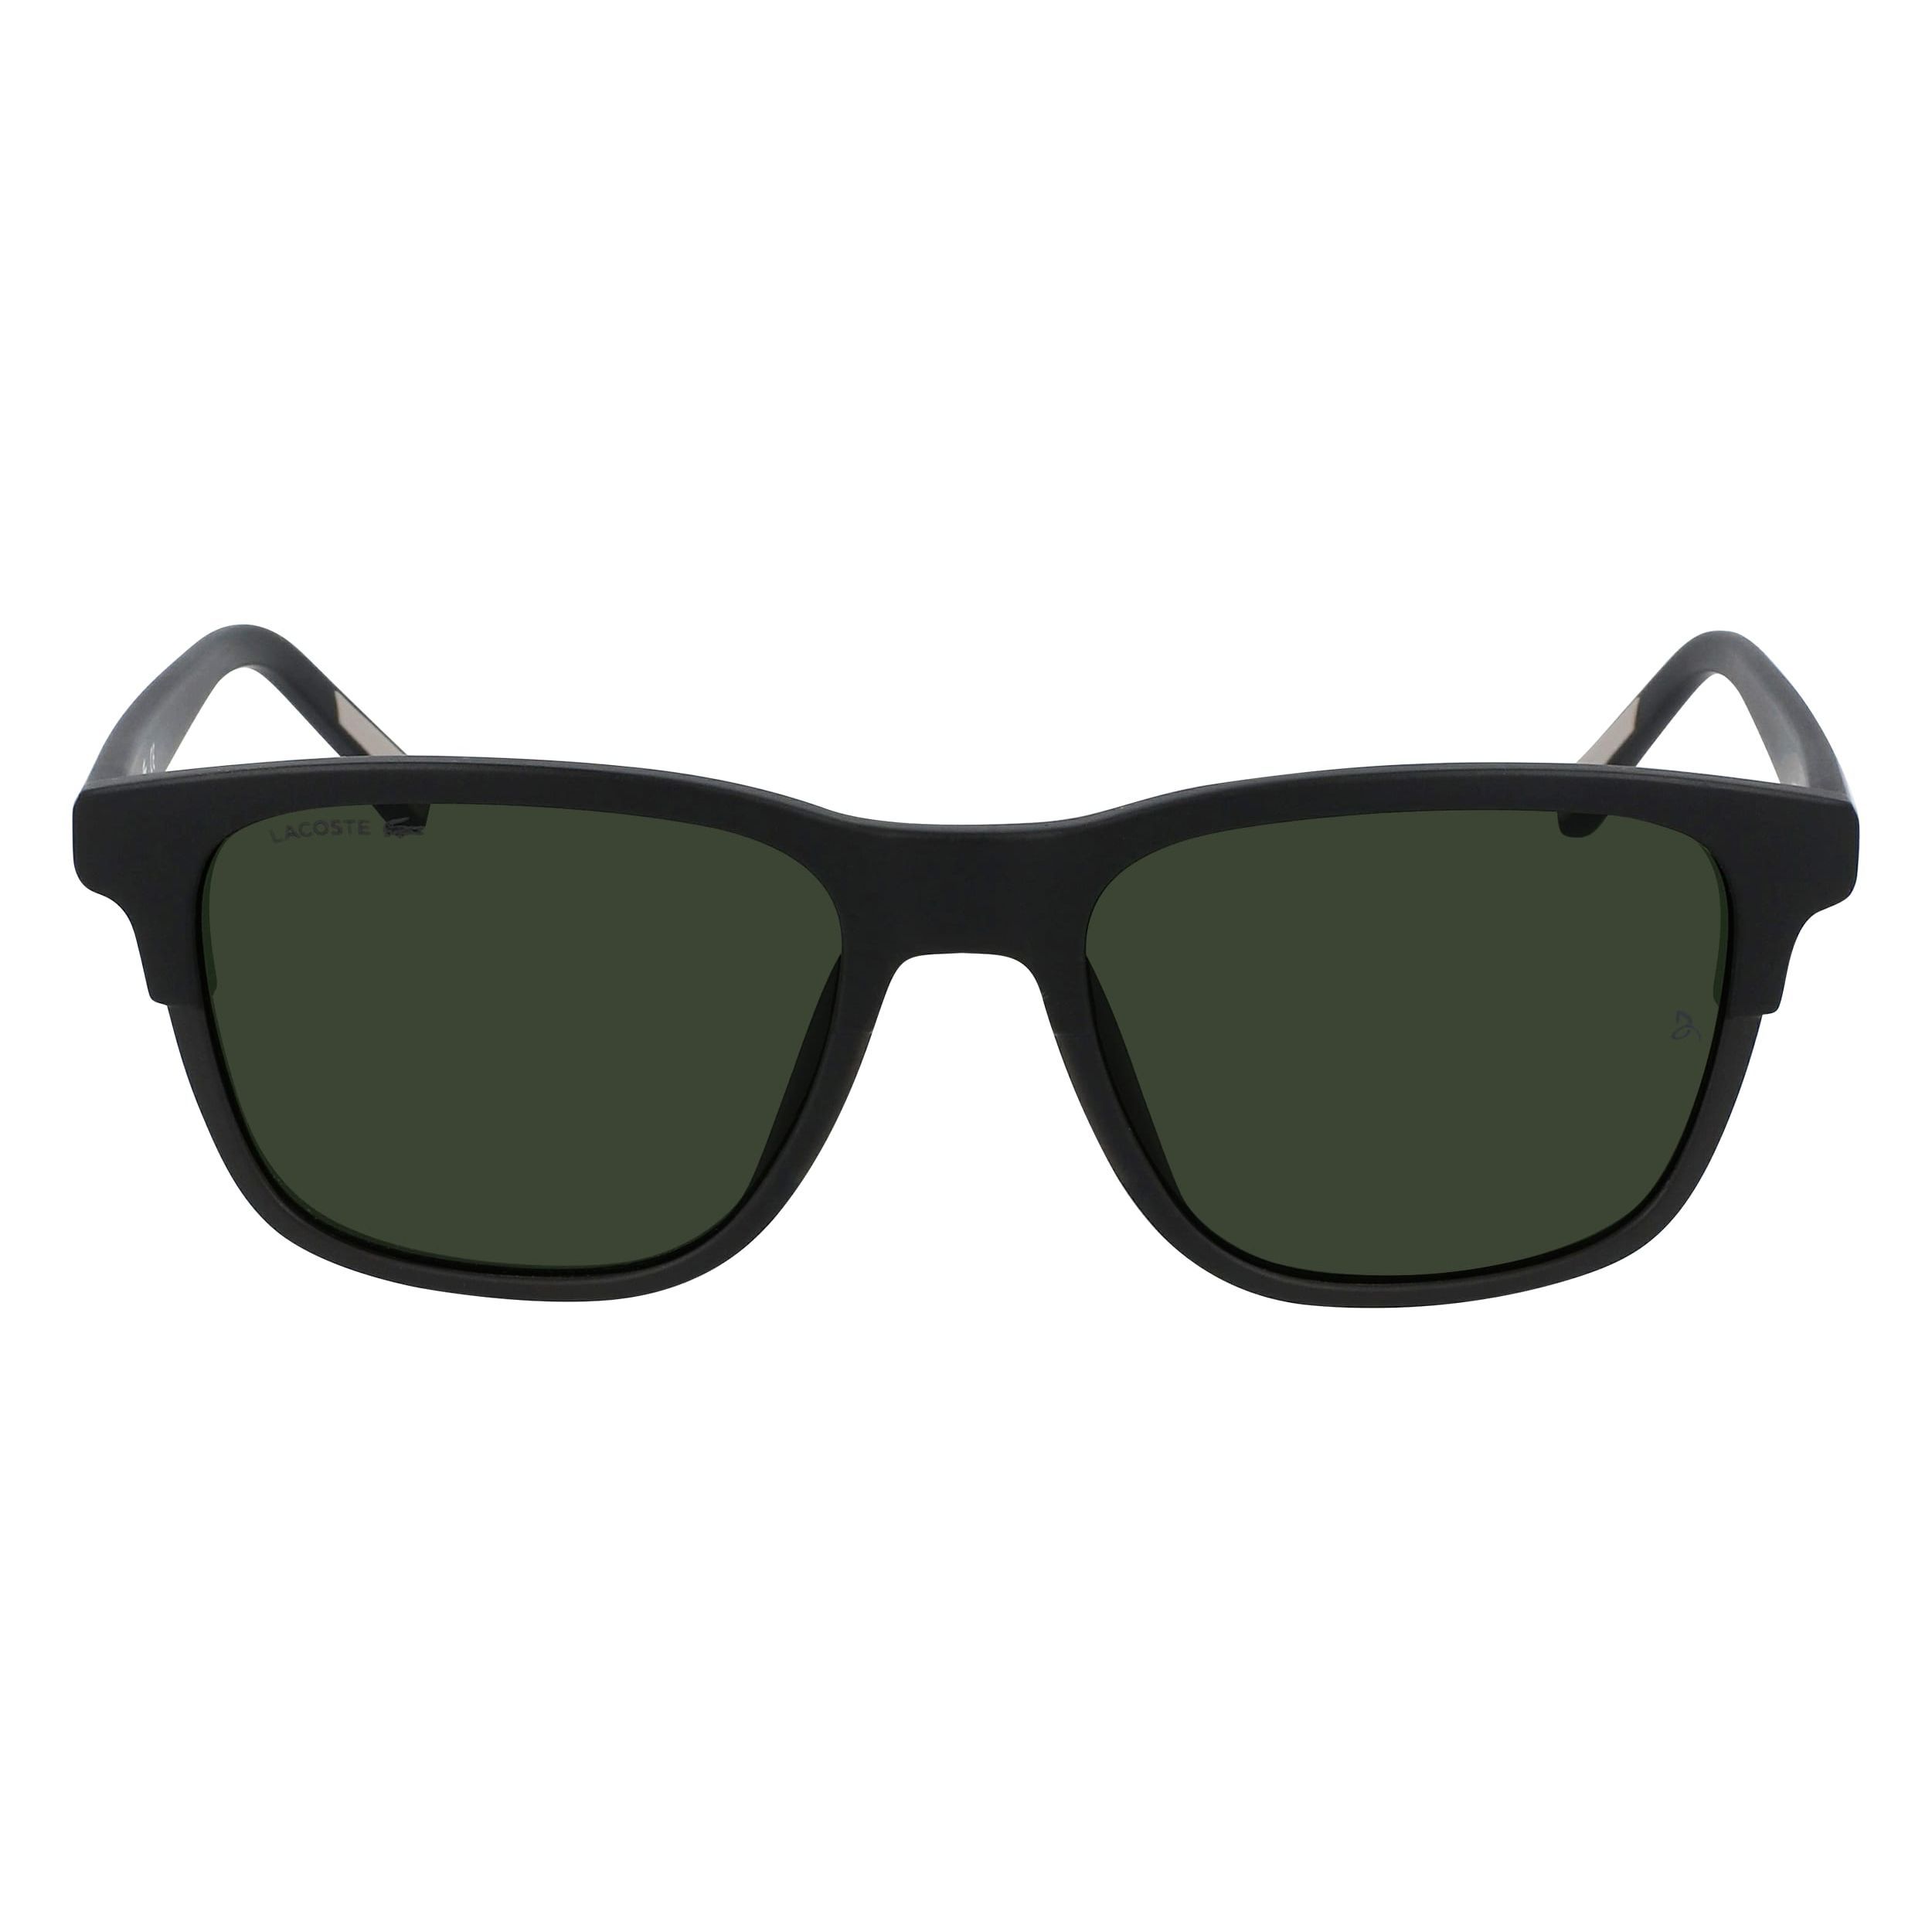 L607SND Square Sunglasses 001 - size 54